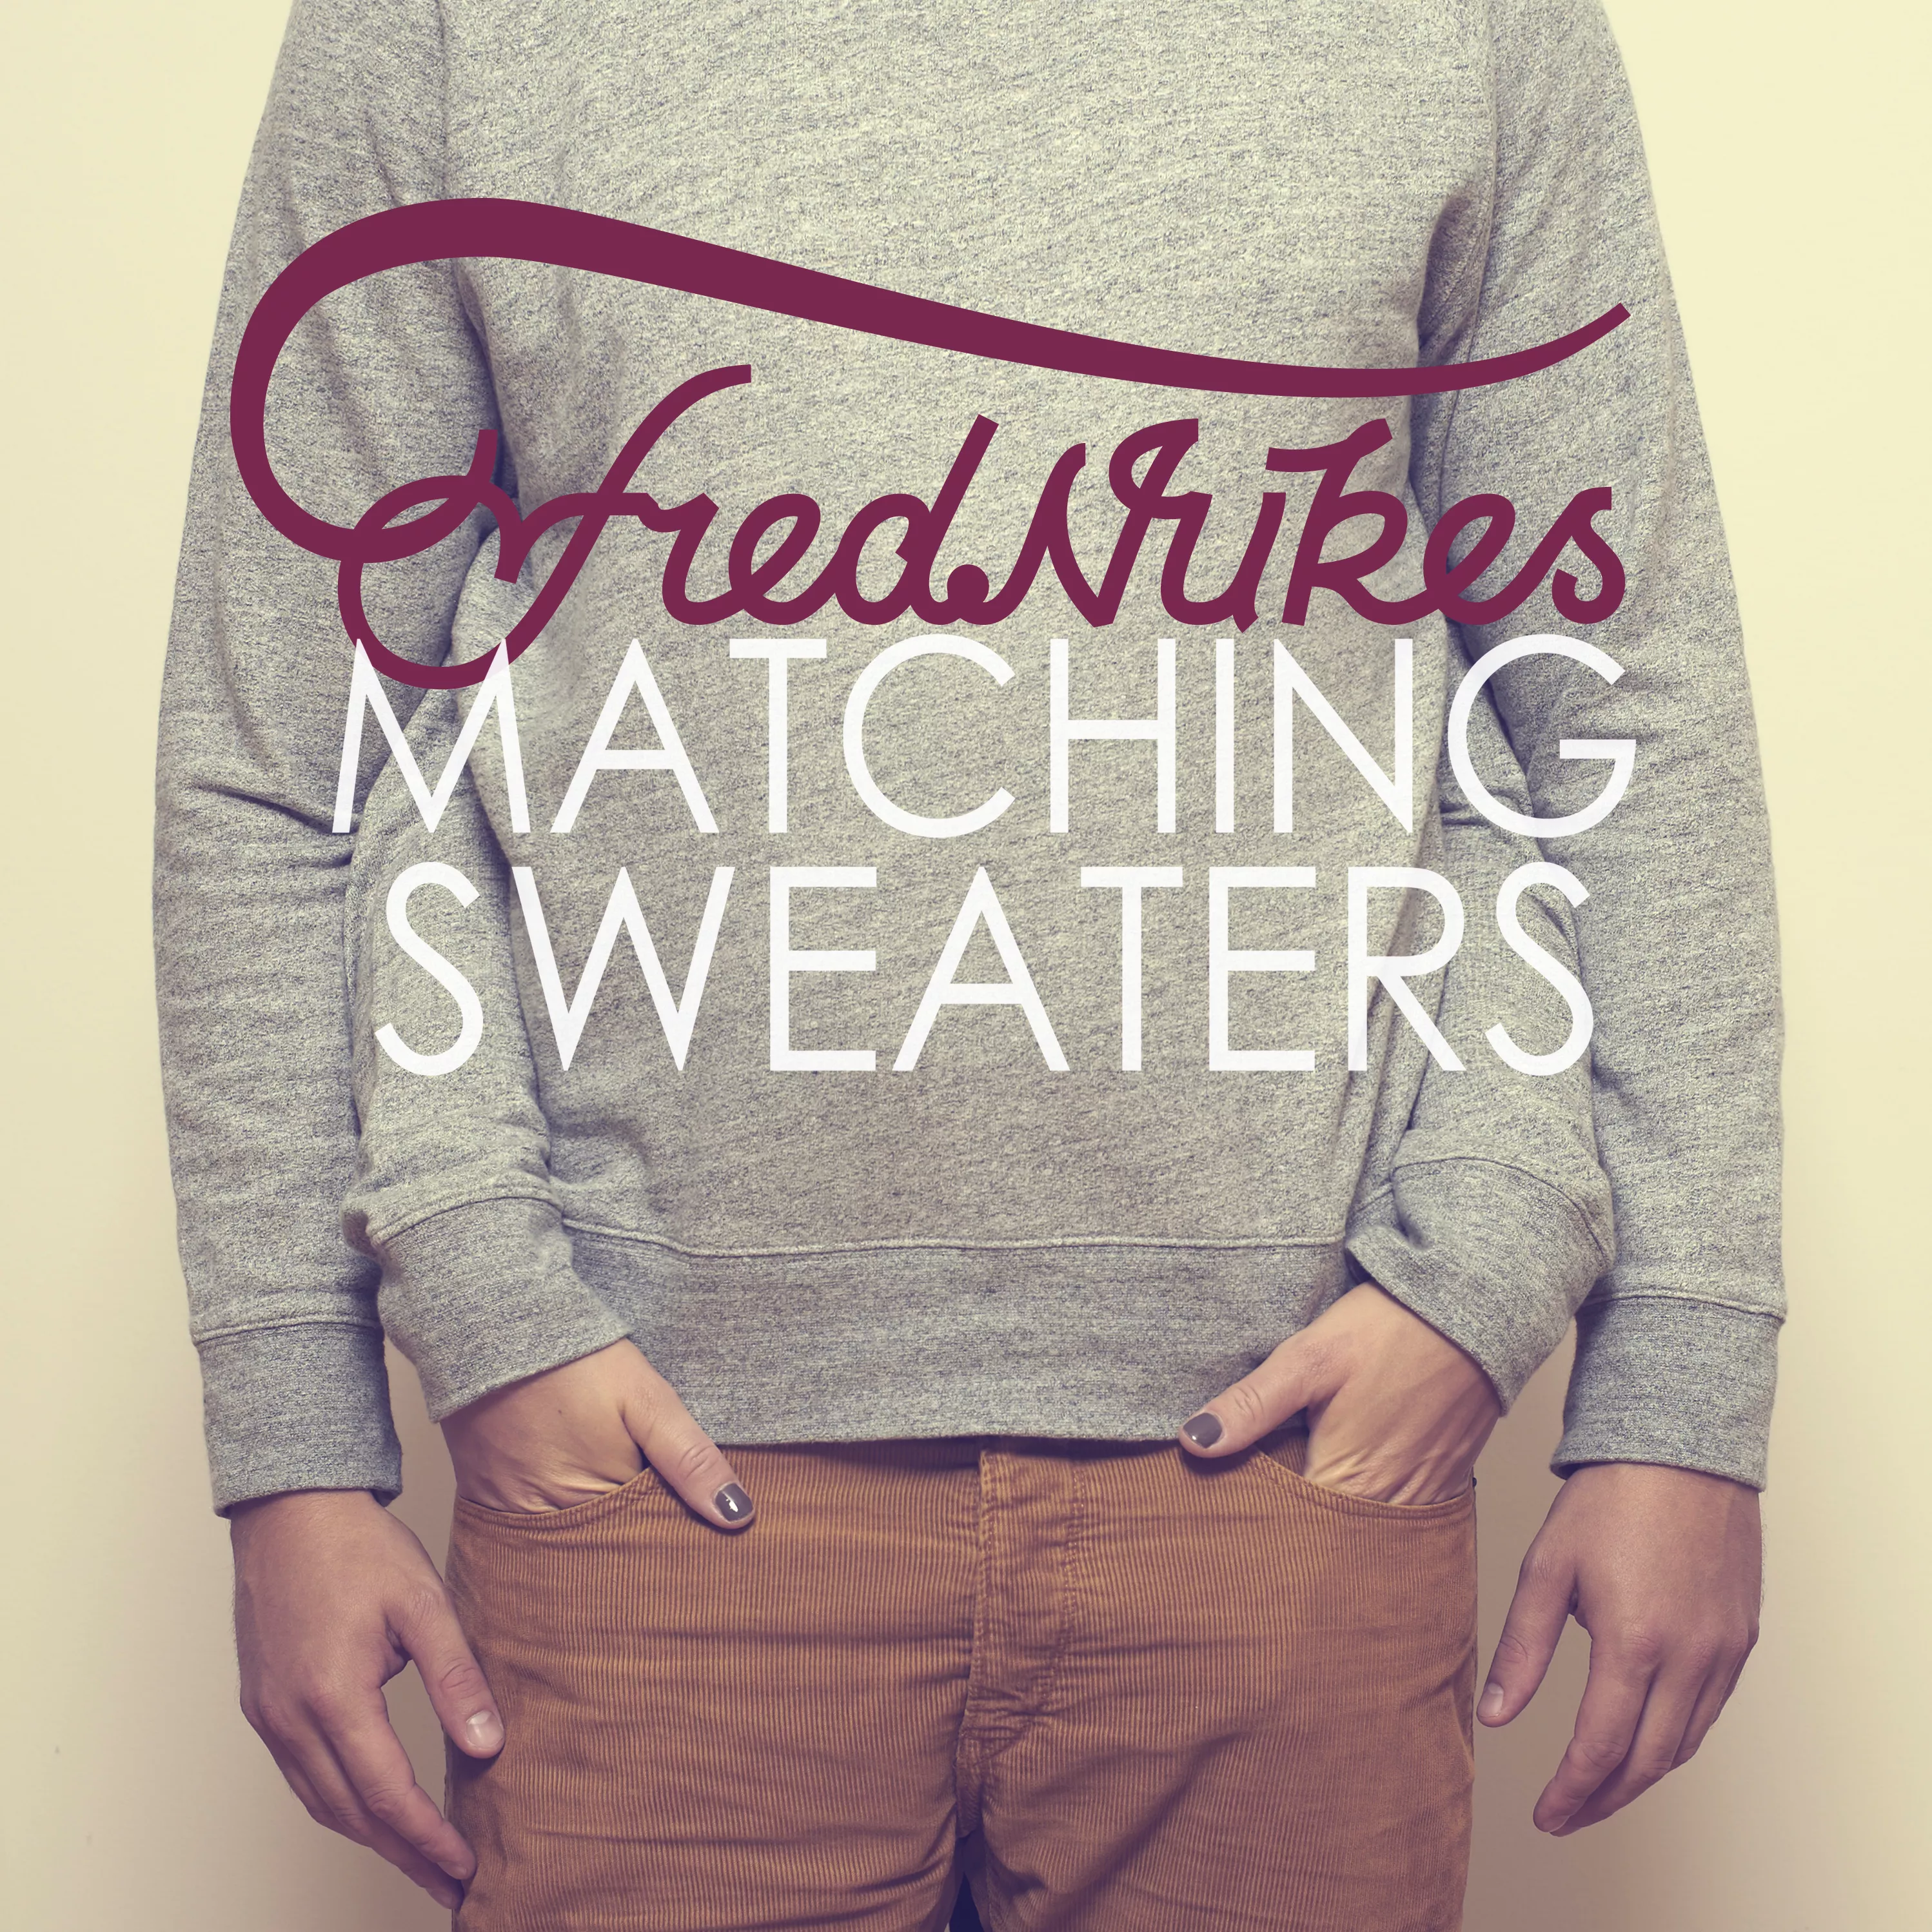 Matching Sweaters - FredNukes